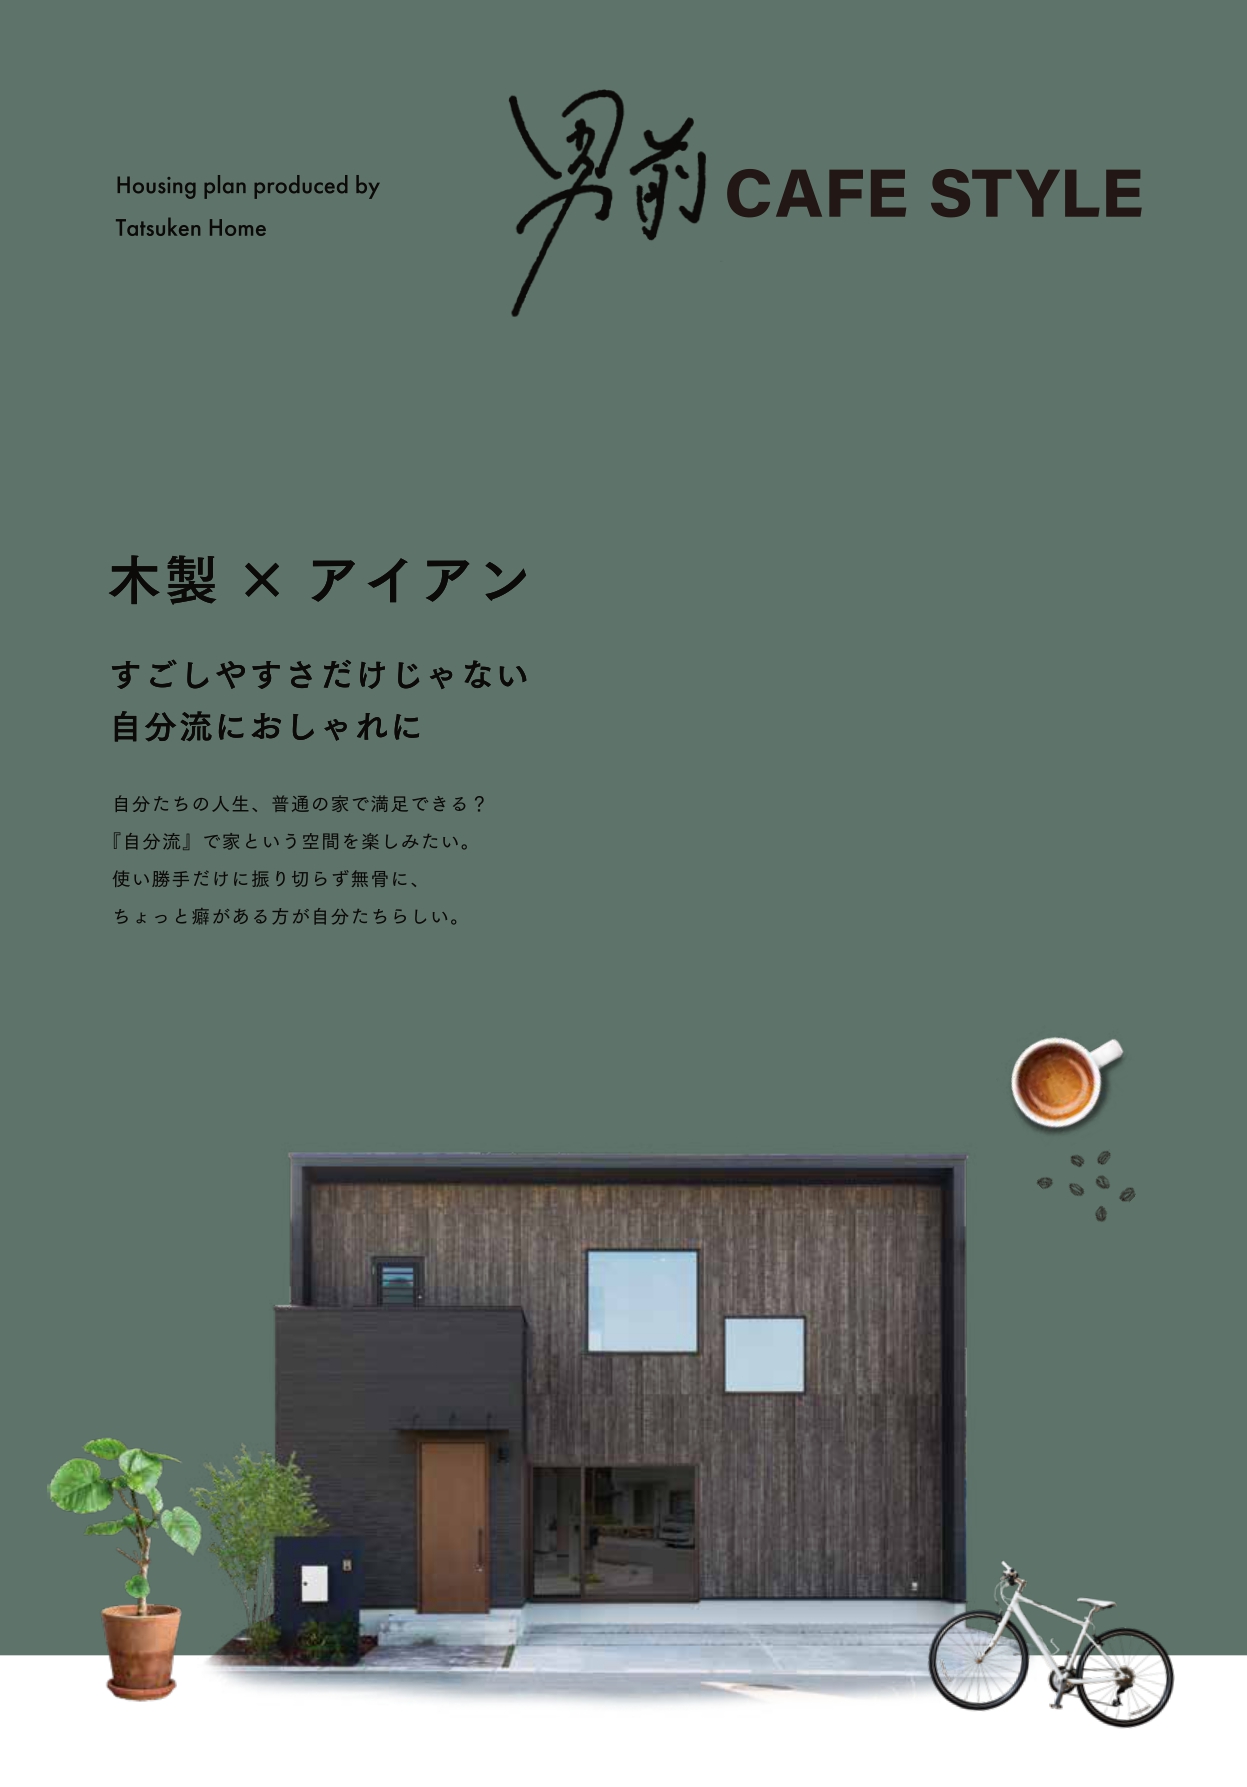 男前cafe styleの家